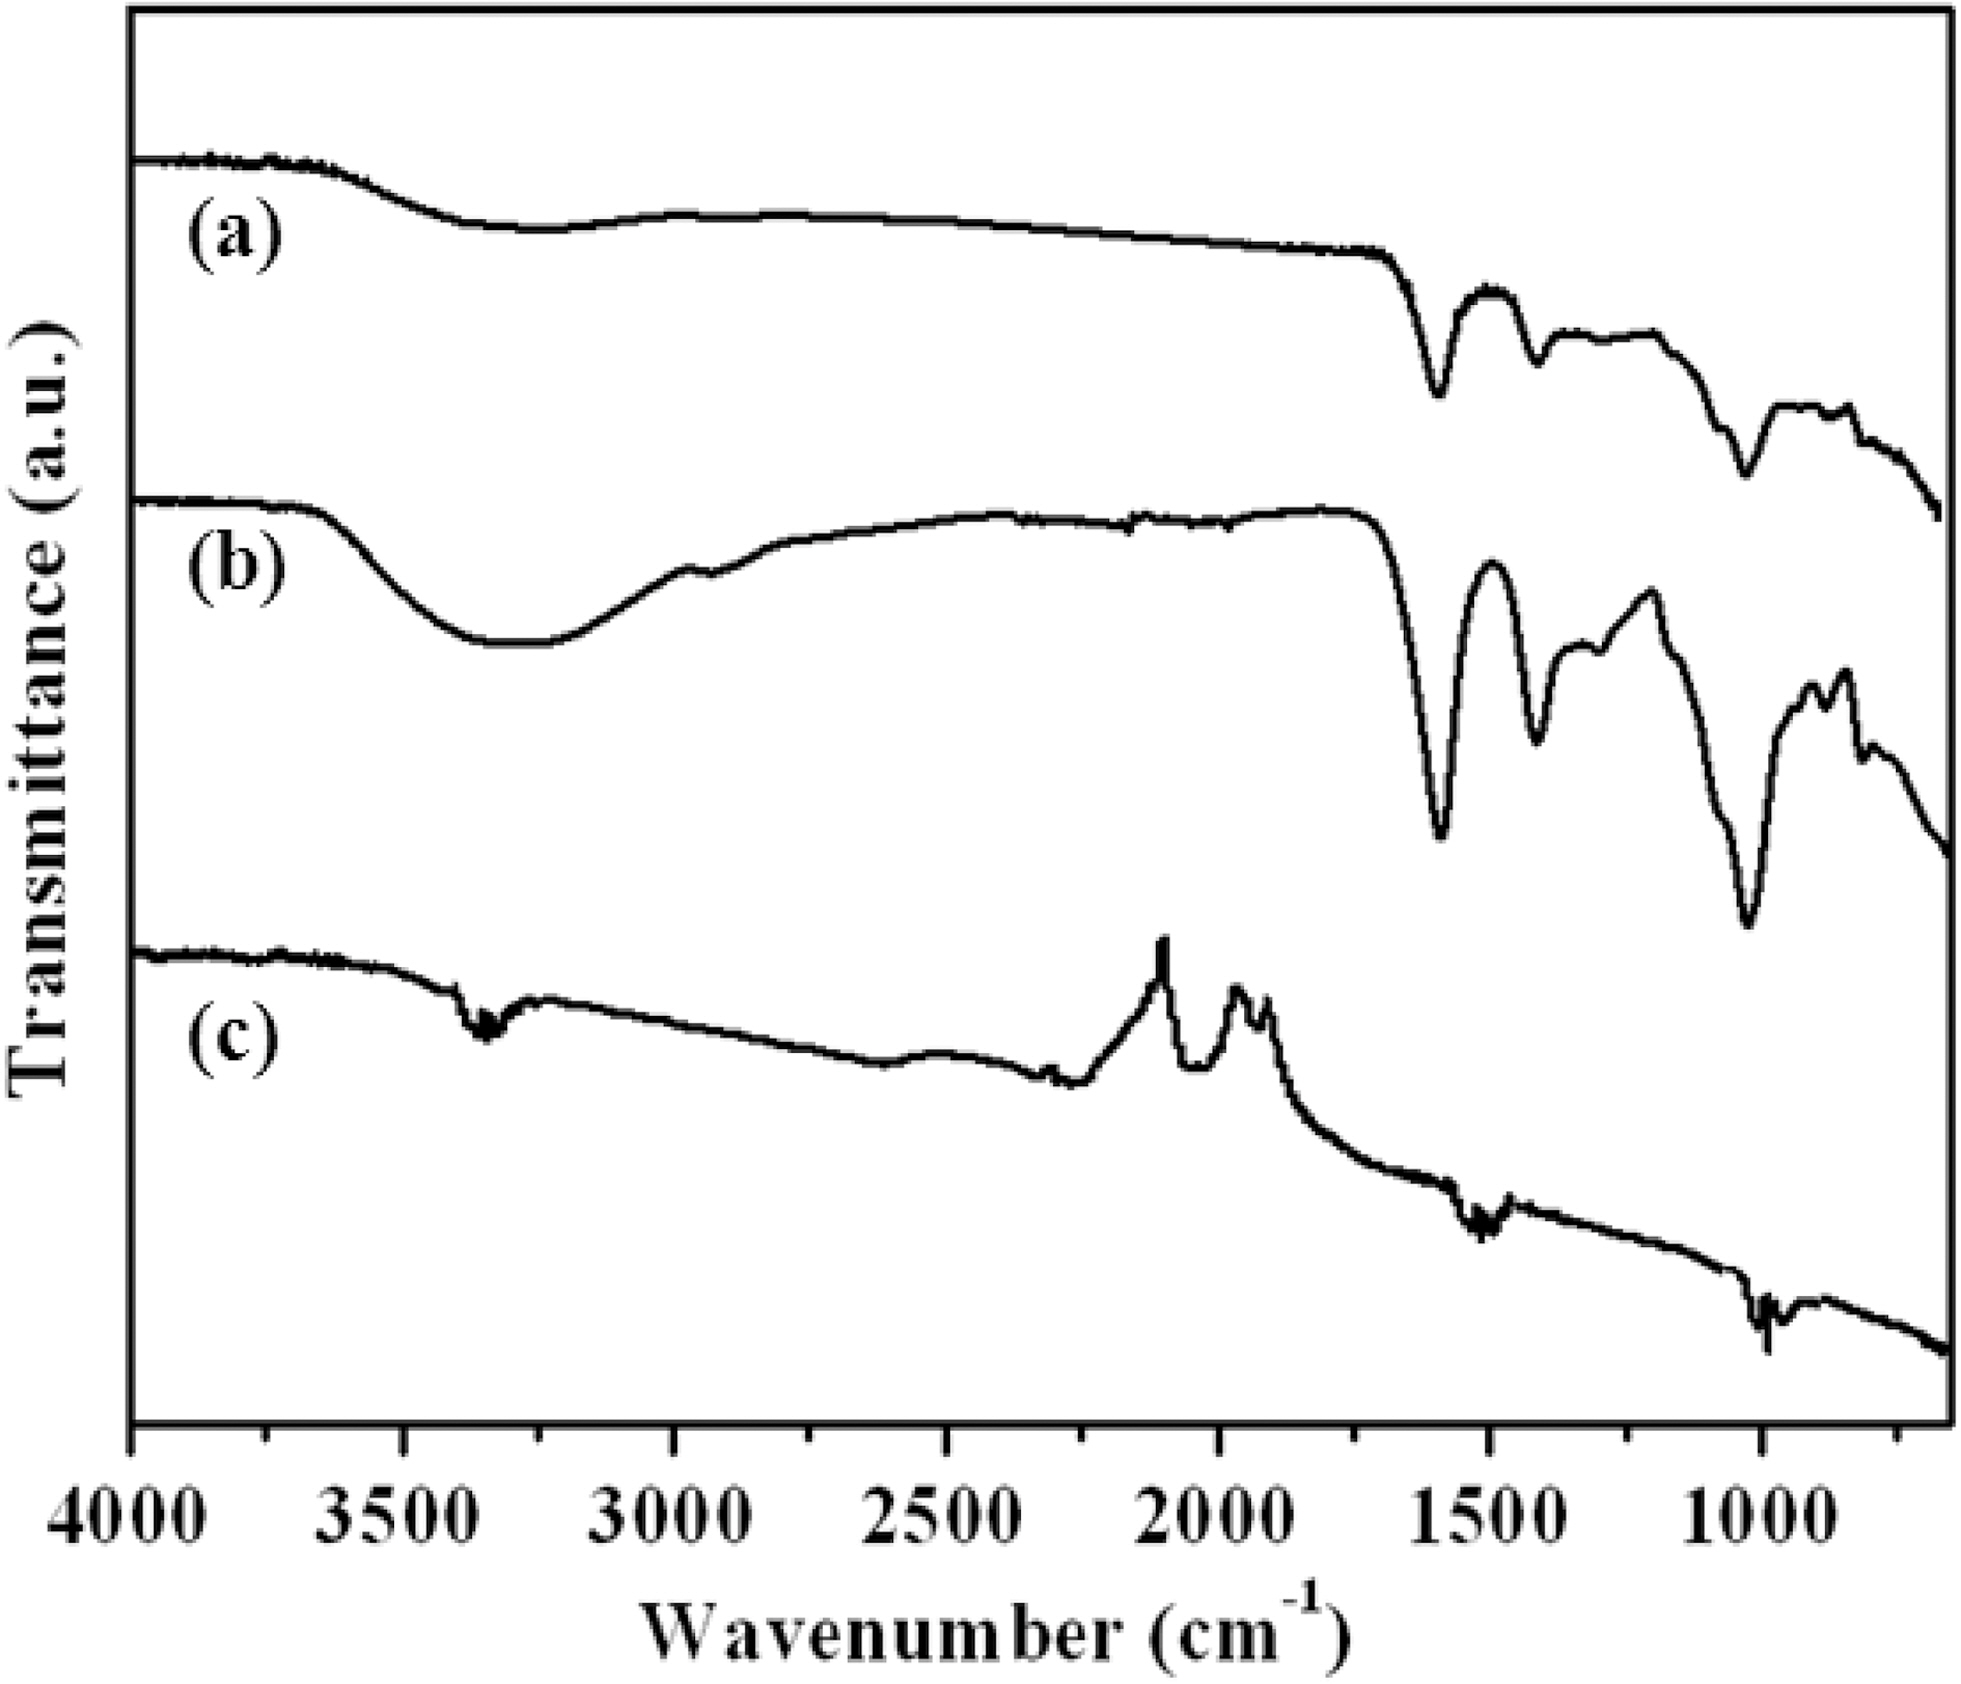 FT-IR spectra of (a) alginate/CNT composite (b) alginate and (c) CNT.